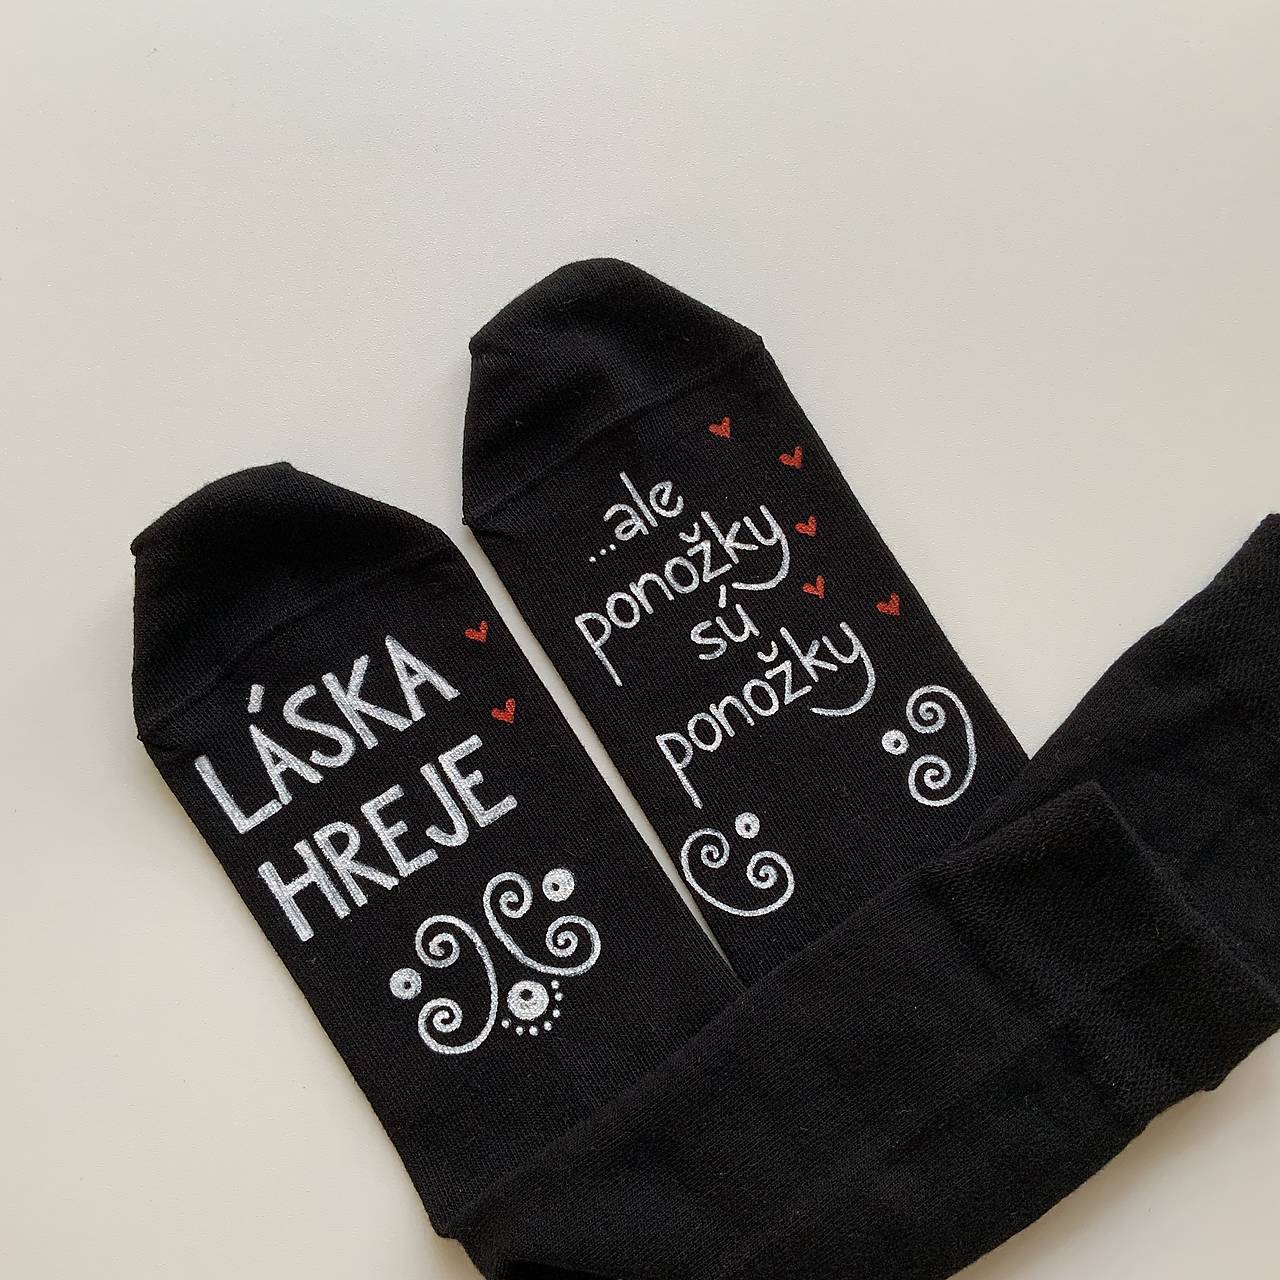 Maľované ponožky s nápisom “LÁSKA HREJE, ale ponožky sú ponožky :) (Čierne)